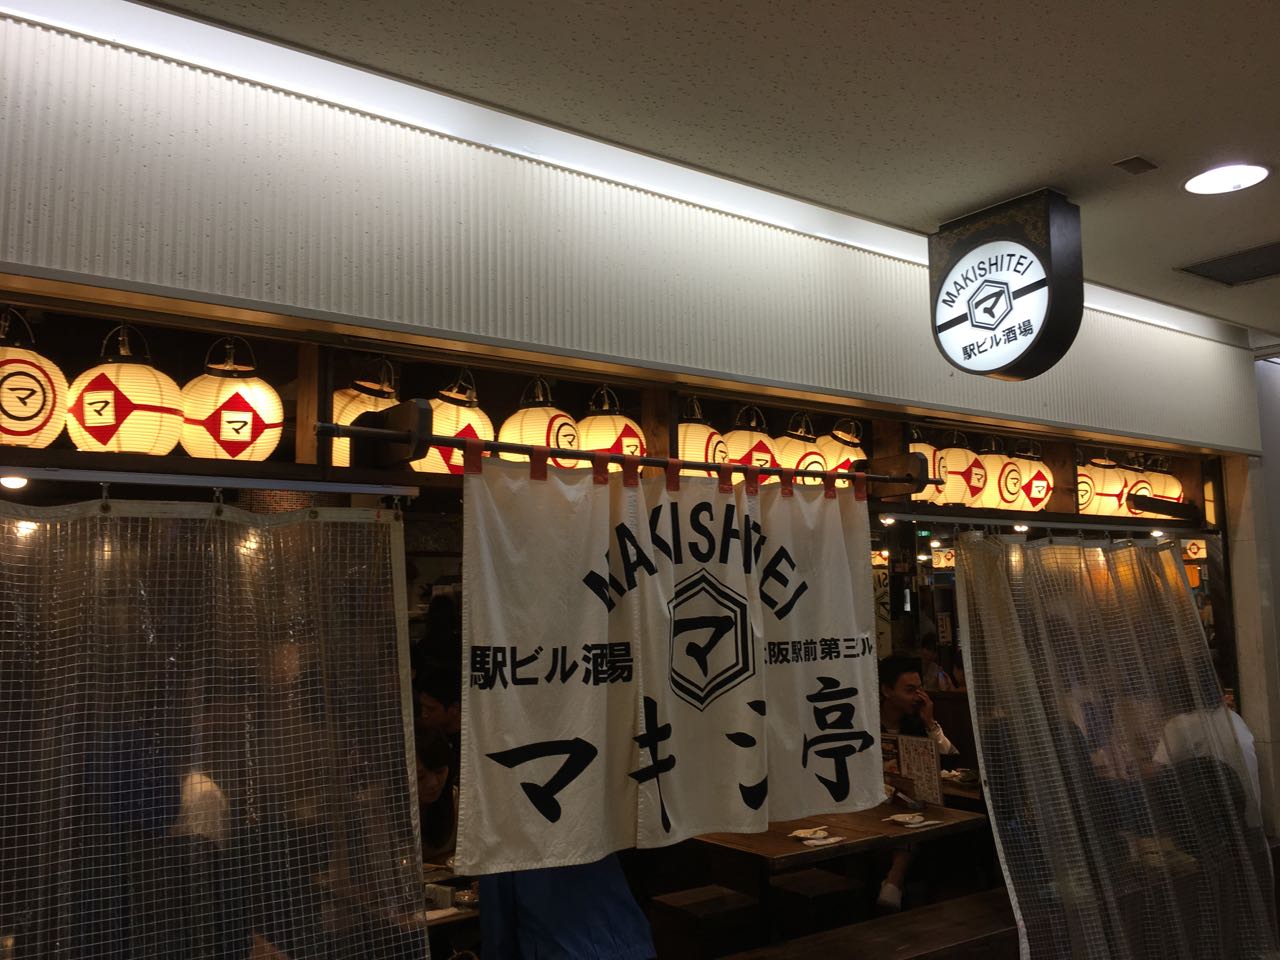 マキシ亭大阪駅前第3ビルで世界のビールを楽しんだよ